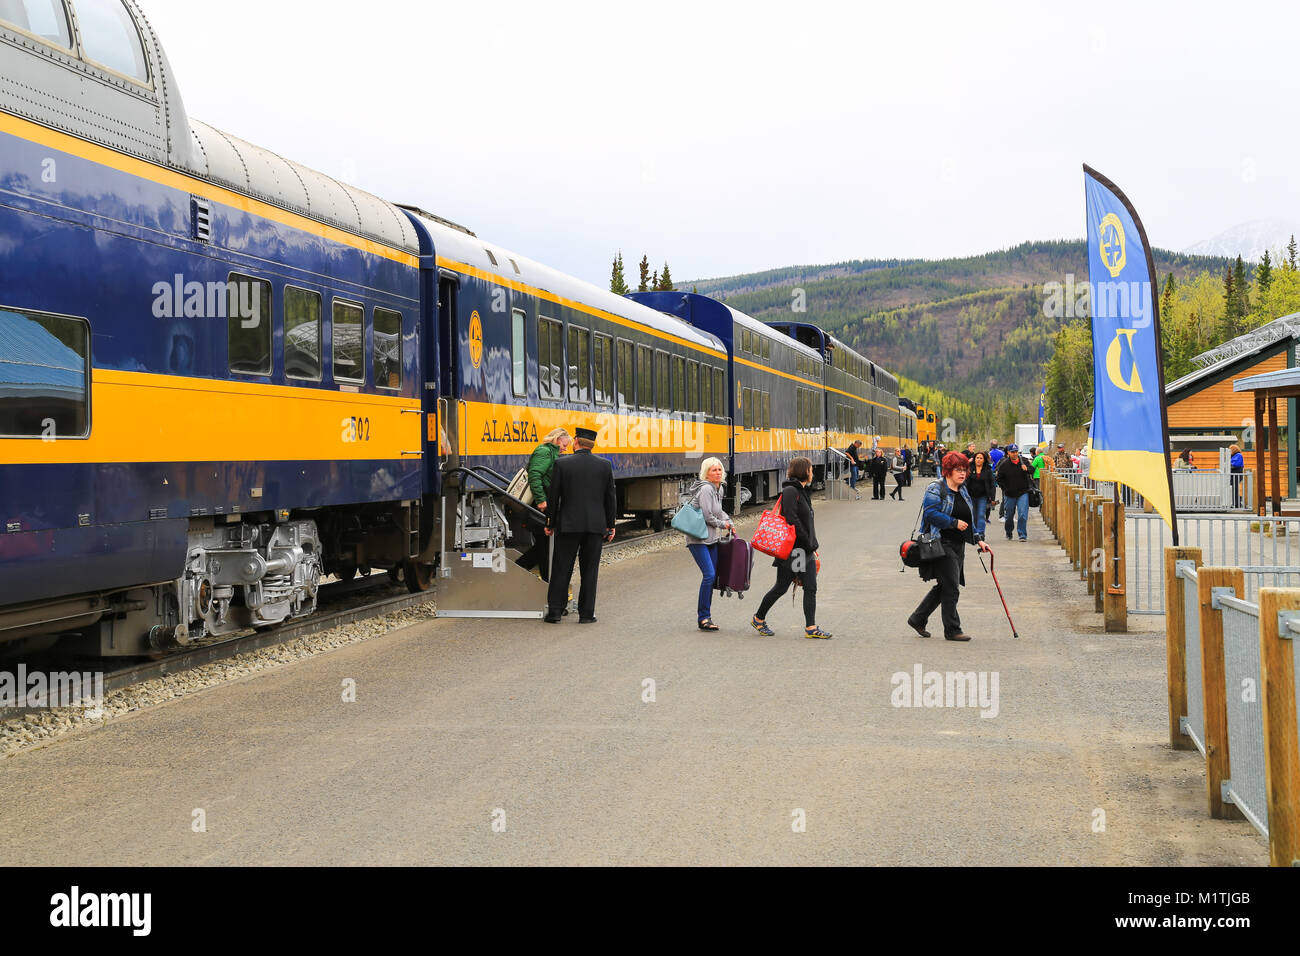 Le Parc National Denali, Alaska, USA - Mai 21, 2017 : l'Alaska Railroad Train s'arrête à la station de Denali. Les sortir de la voitures de chemin de fer. Banque D'Images